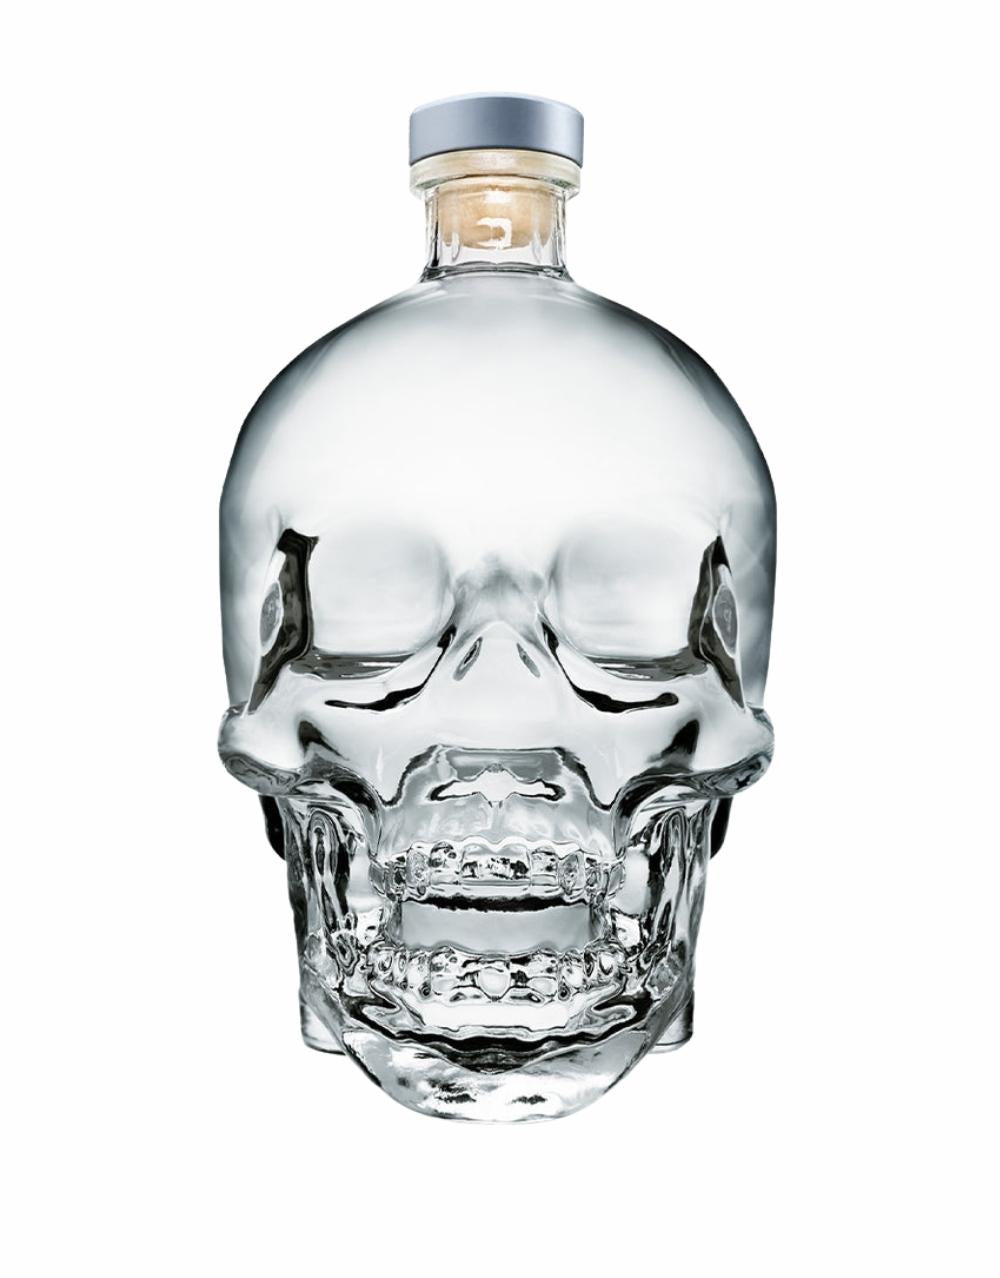 Crystal Head Vodka